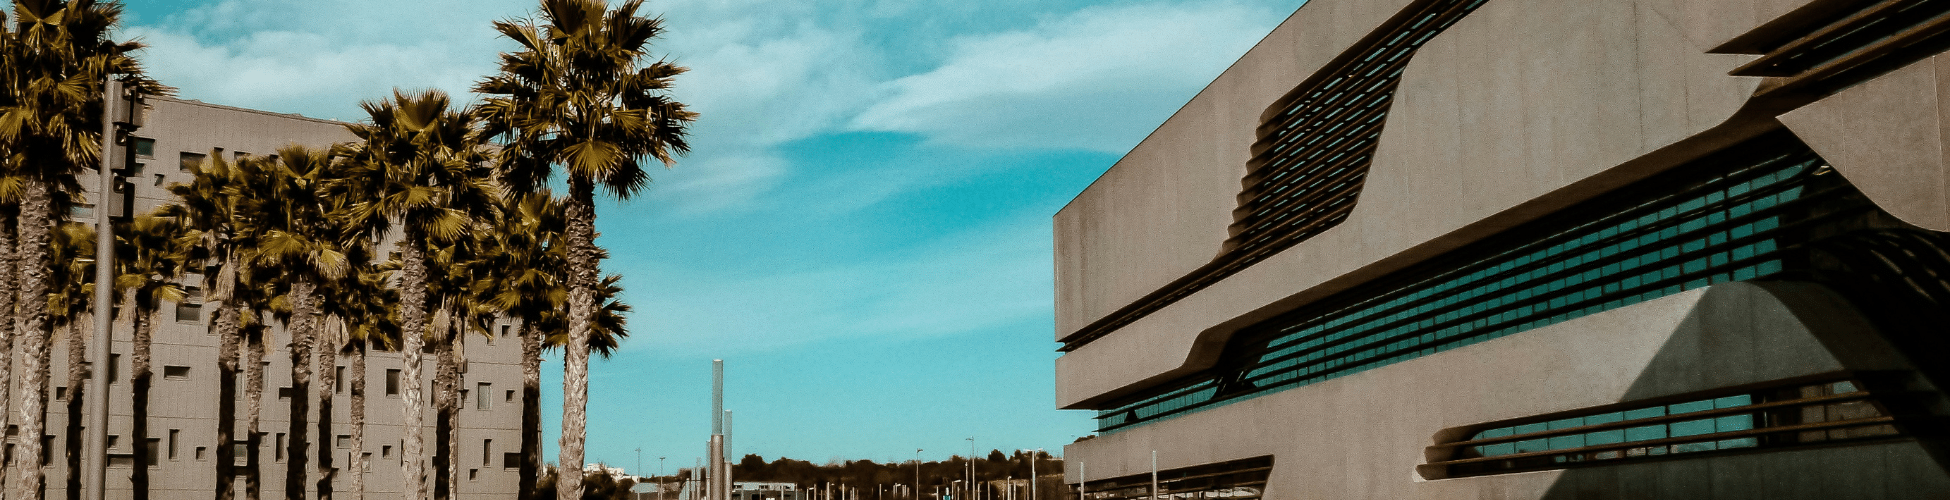 ville de Montpellier avec des palmiers, un ciel bleu et le bâtiment Pierresvives Montpellier : Pierresvives de Zaha Hadid